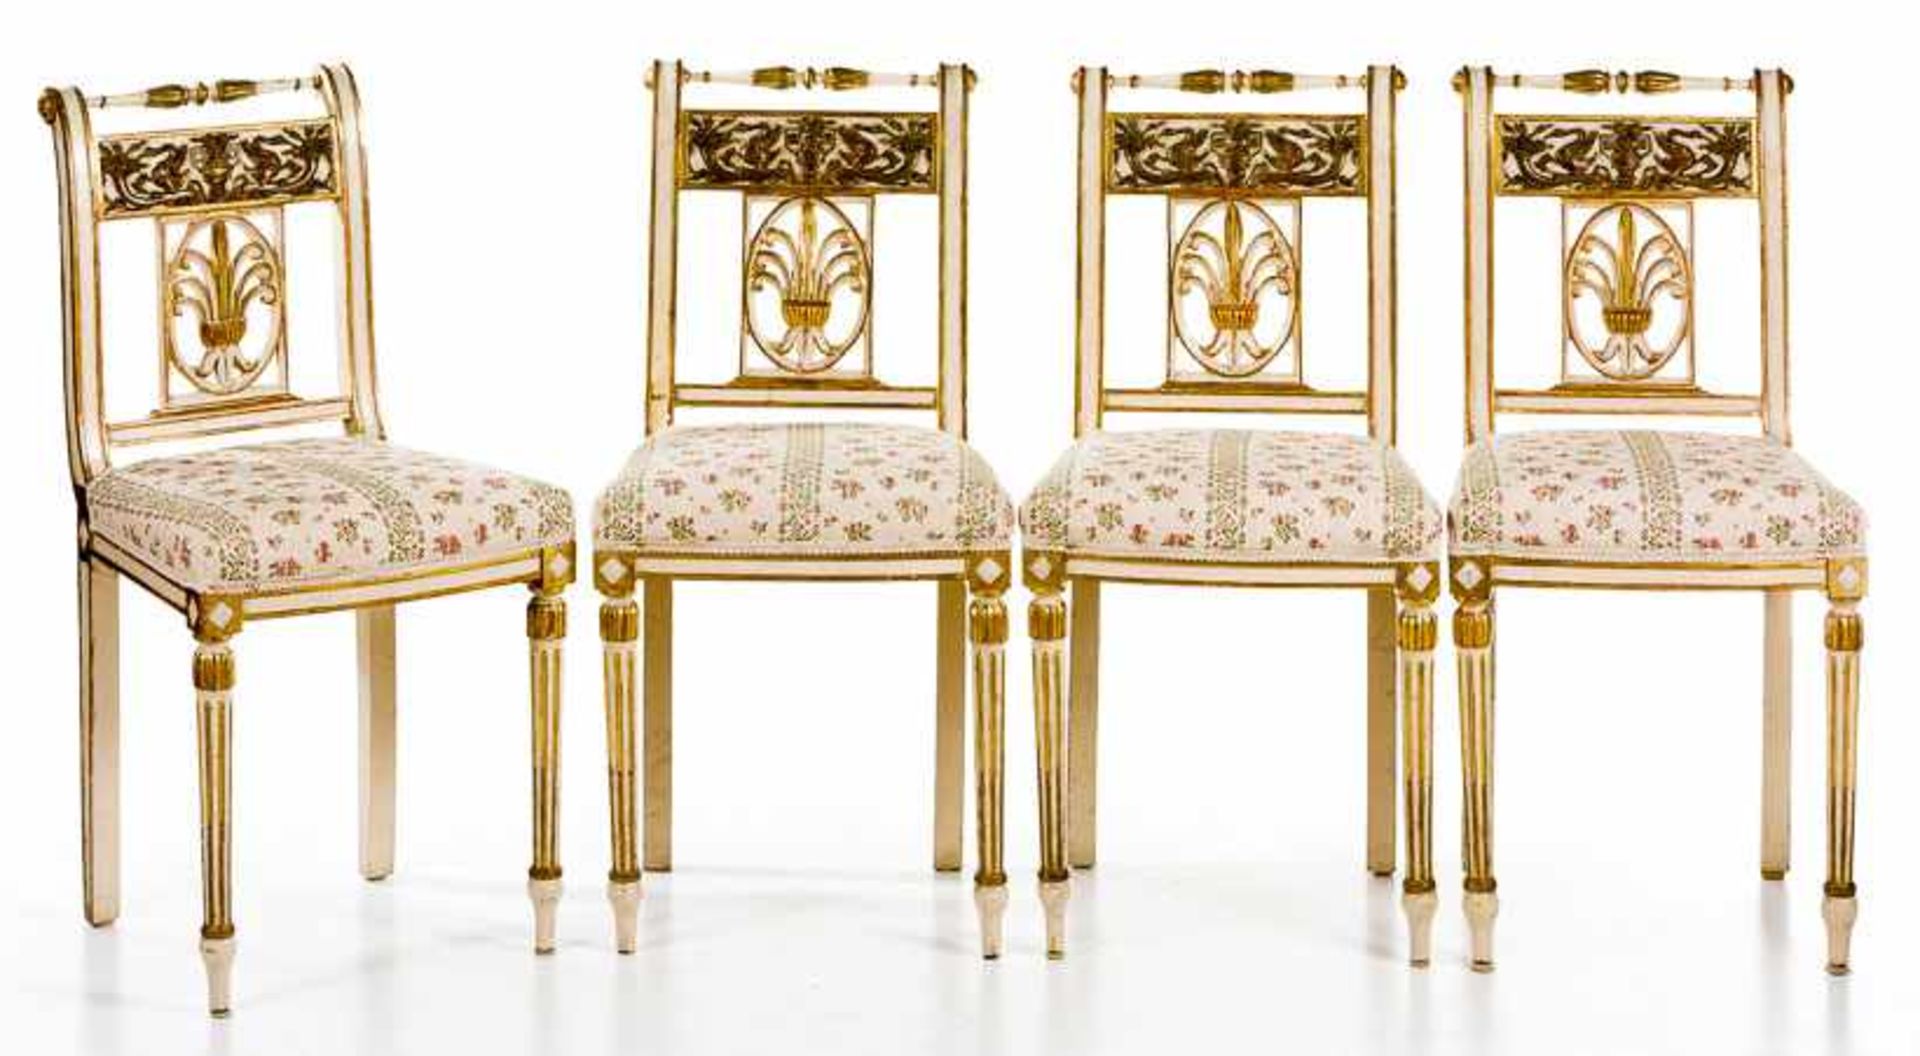 Vier Stühle im gustavianischen StilSchweden, 19. Jh.Holz, farbig gefasst und vergoldet. S-förmig